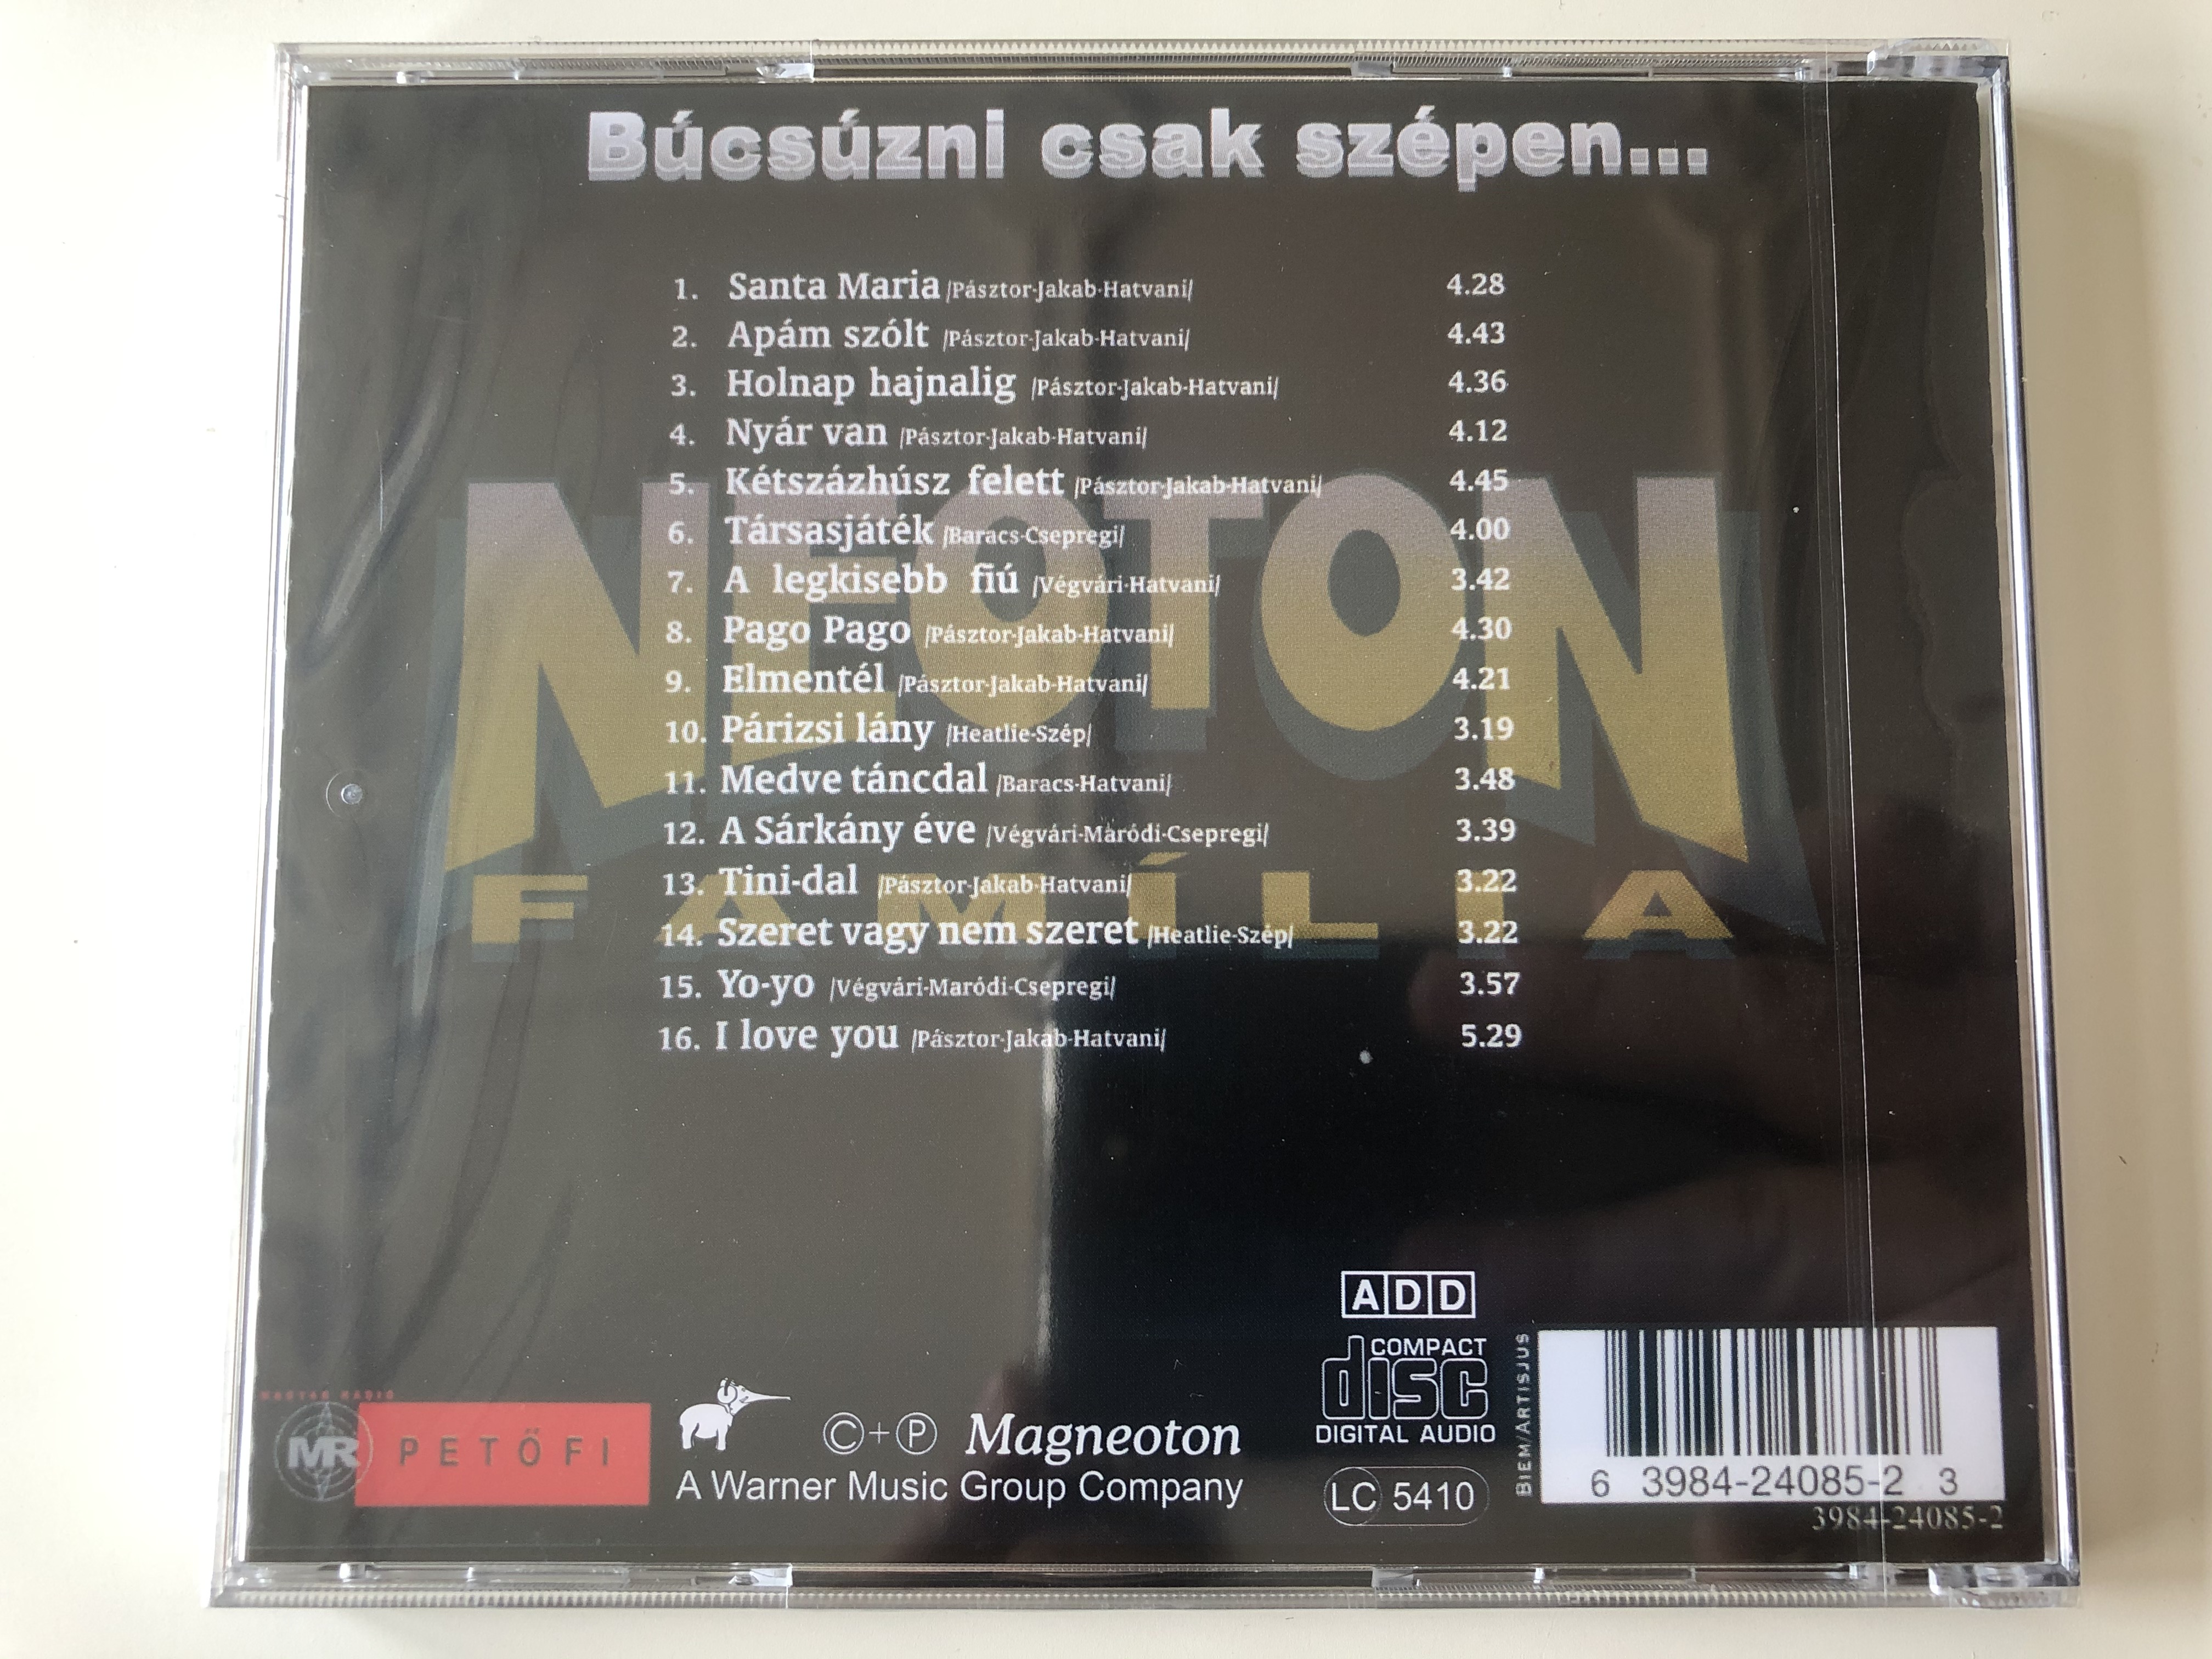 neoton-fam-lia-b-cs-zni-csak-sz-pen...-reszletek-az-egyuttes-1998.-aprilis-24-en-a-budapest-sportcsarnokban-tartott-nagysikeru-koncertjebol.-magneoton-audio-cd-63984-24085-23-2-.jpg